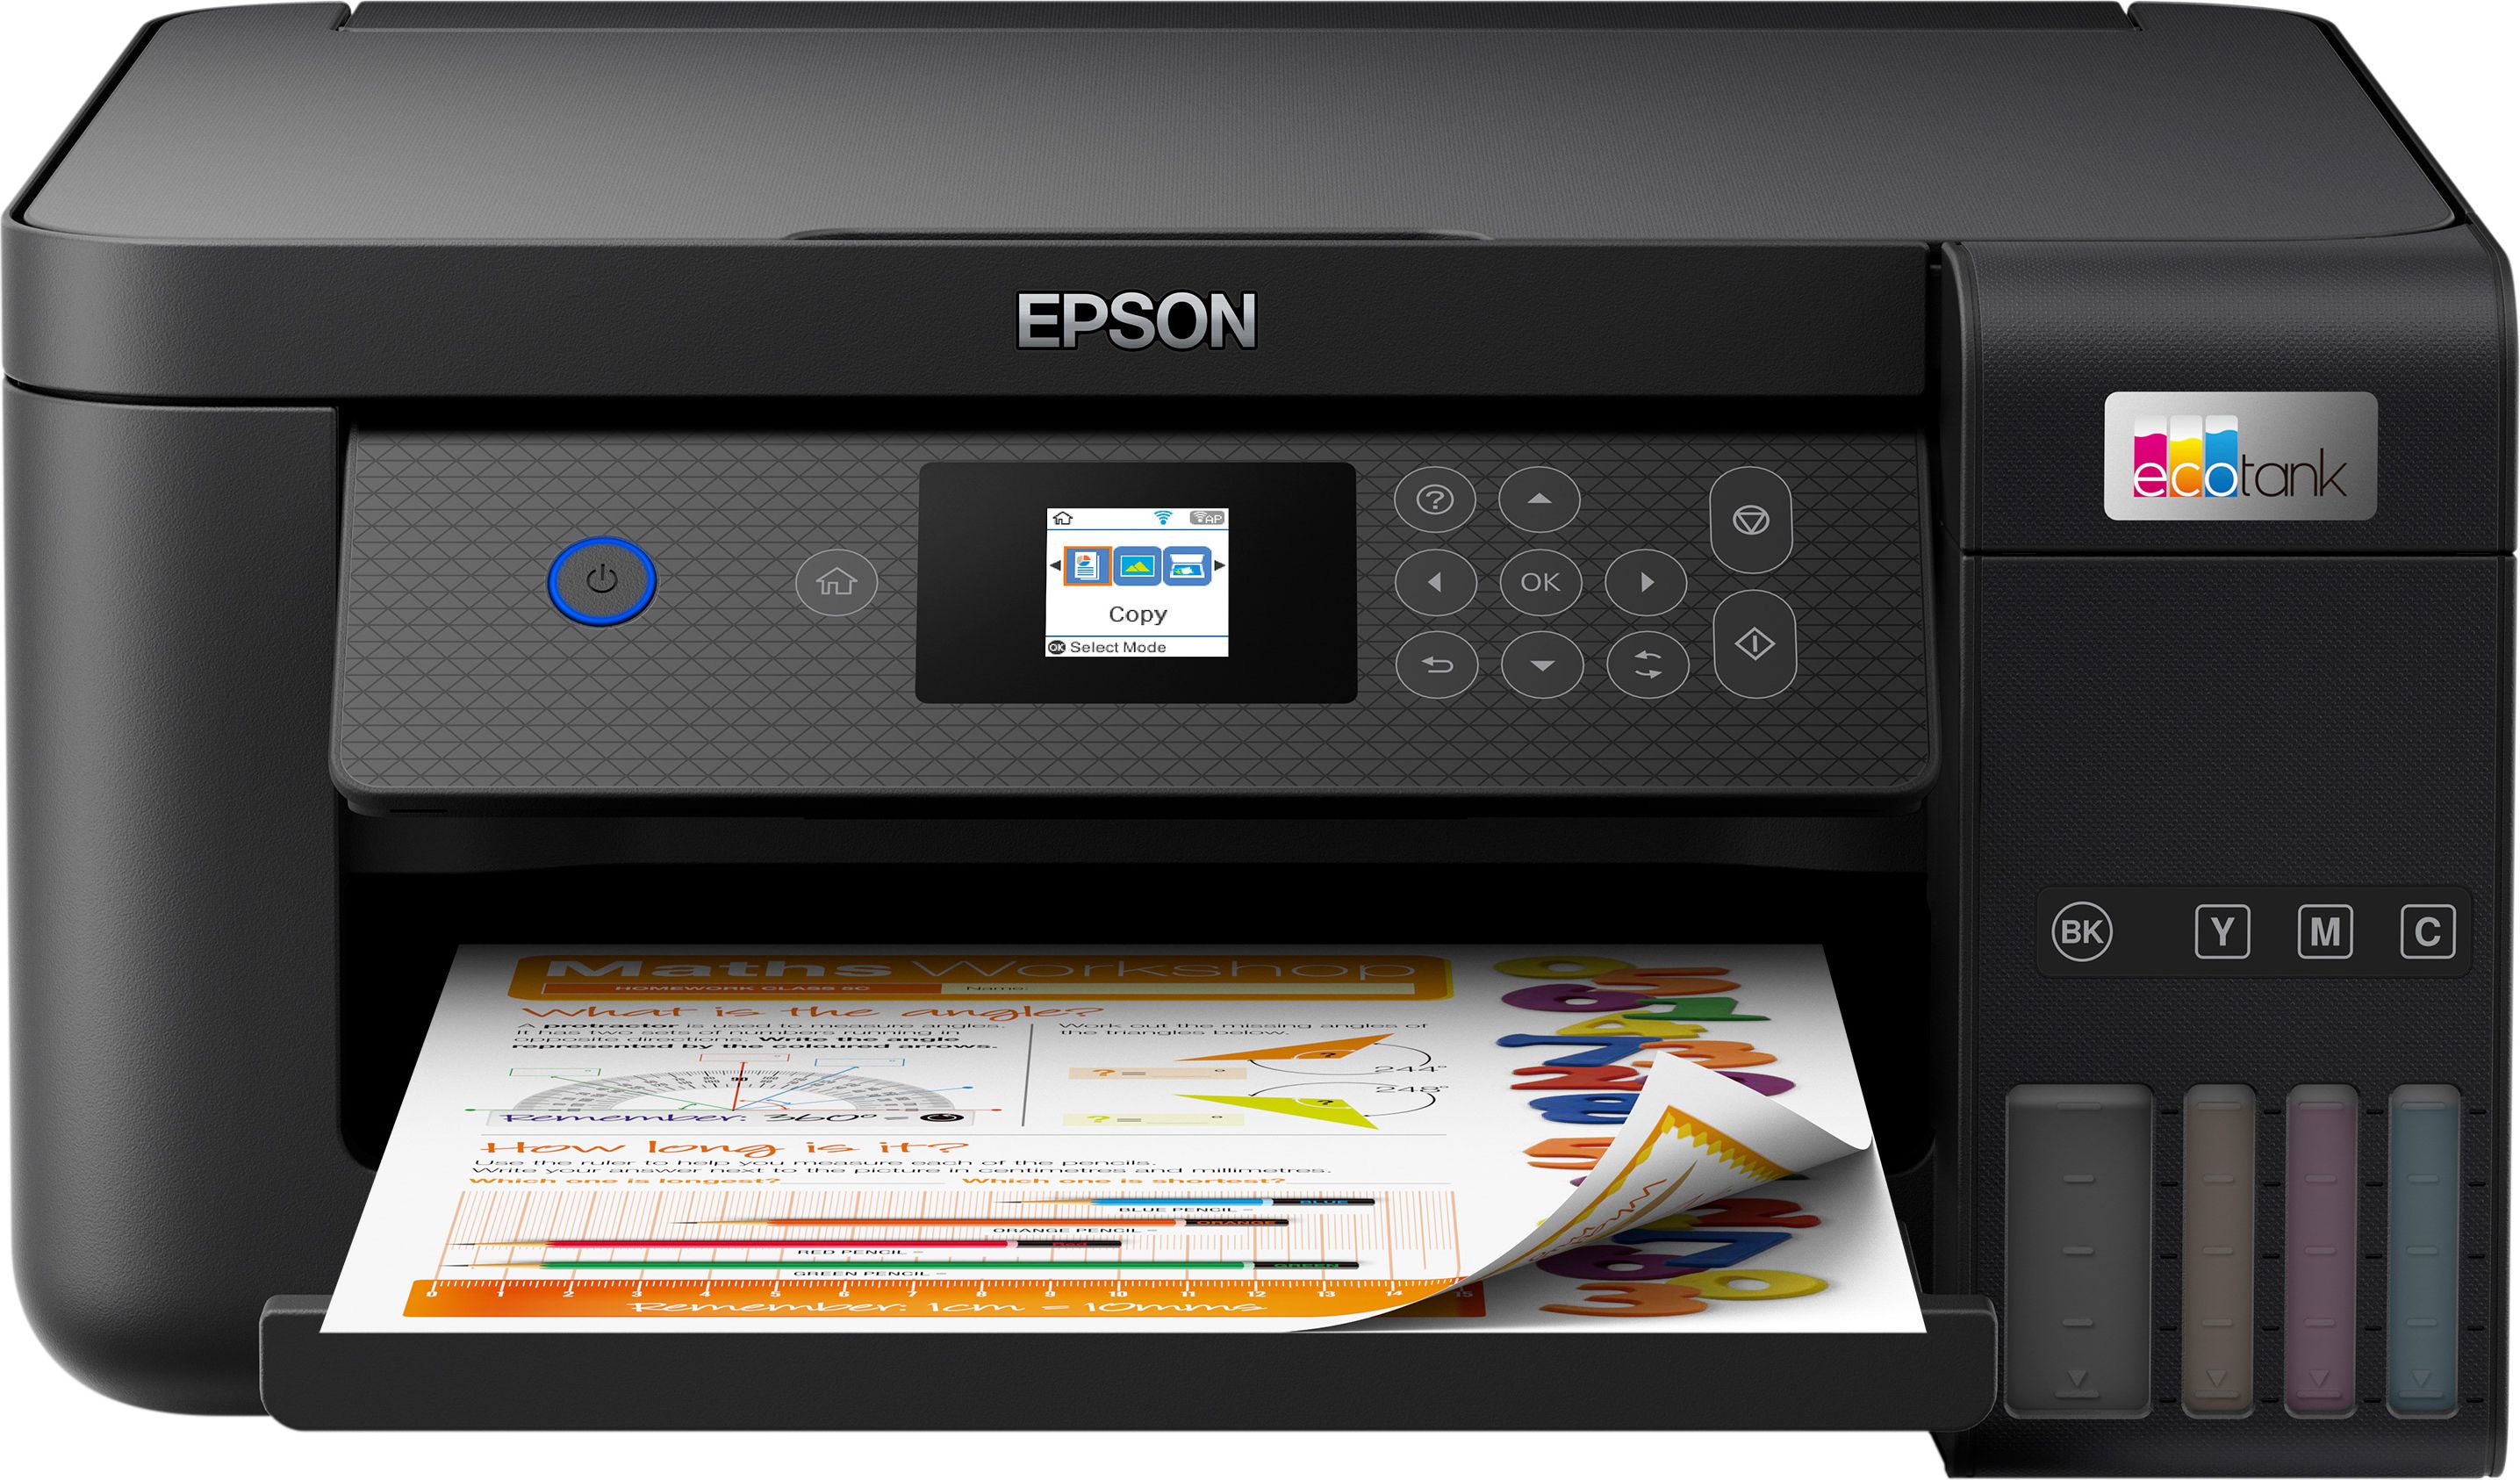 Epson EcoTank ET-2850 Inkjet All In One Wireless Printer - Black, Black